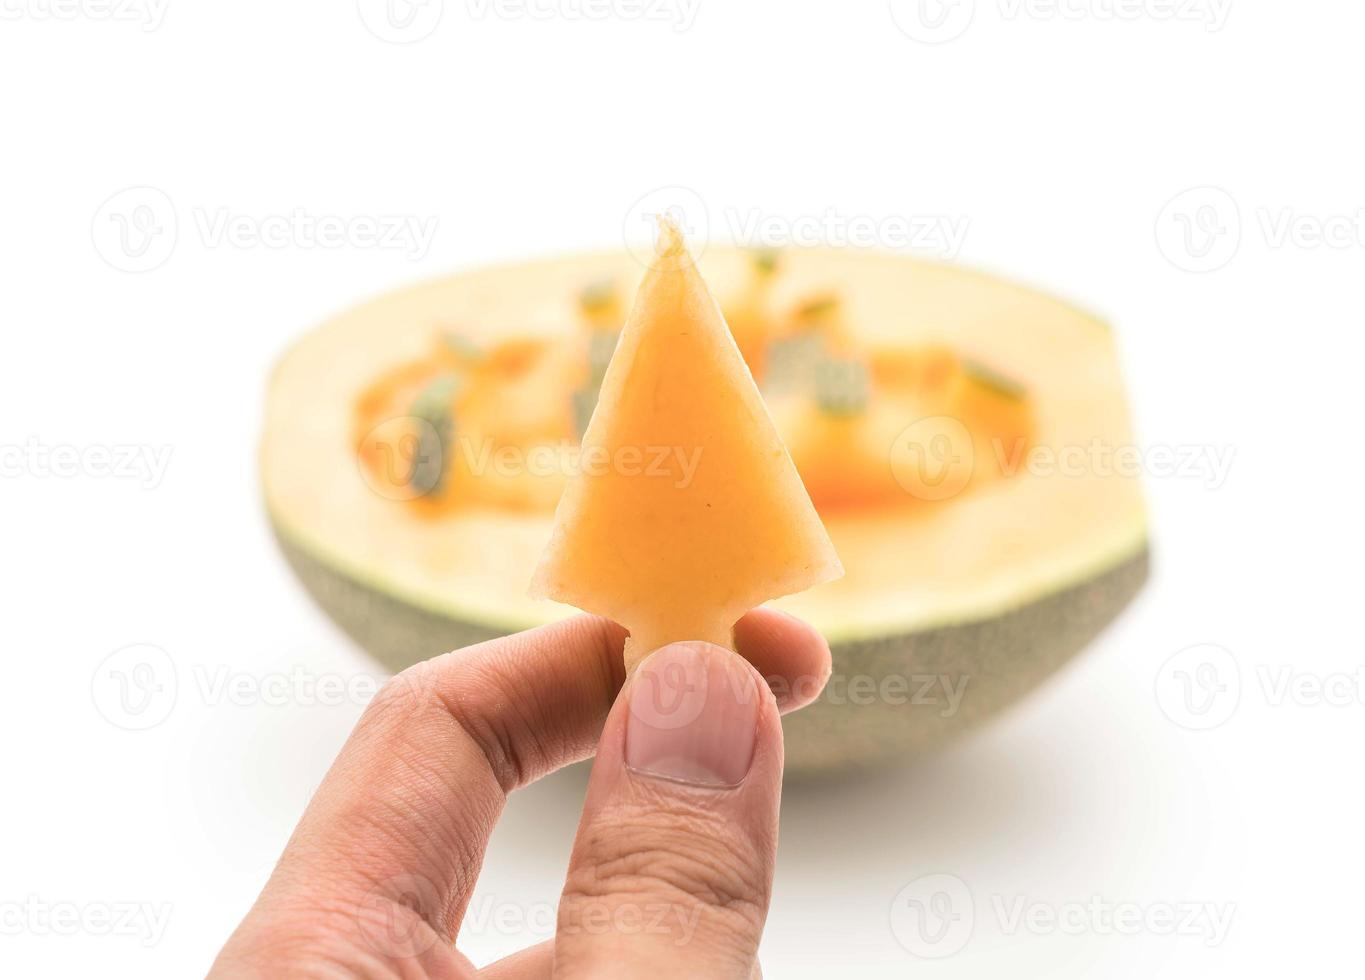 Cantaloupe melon on white background photo